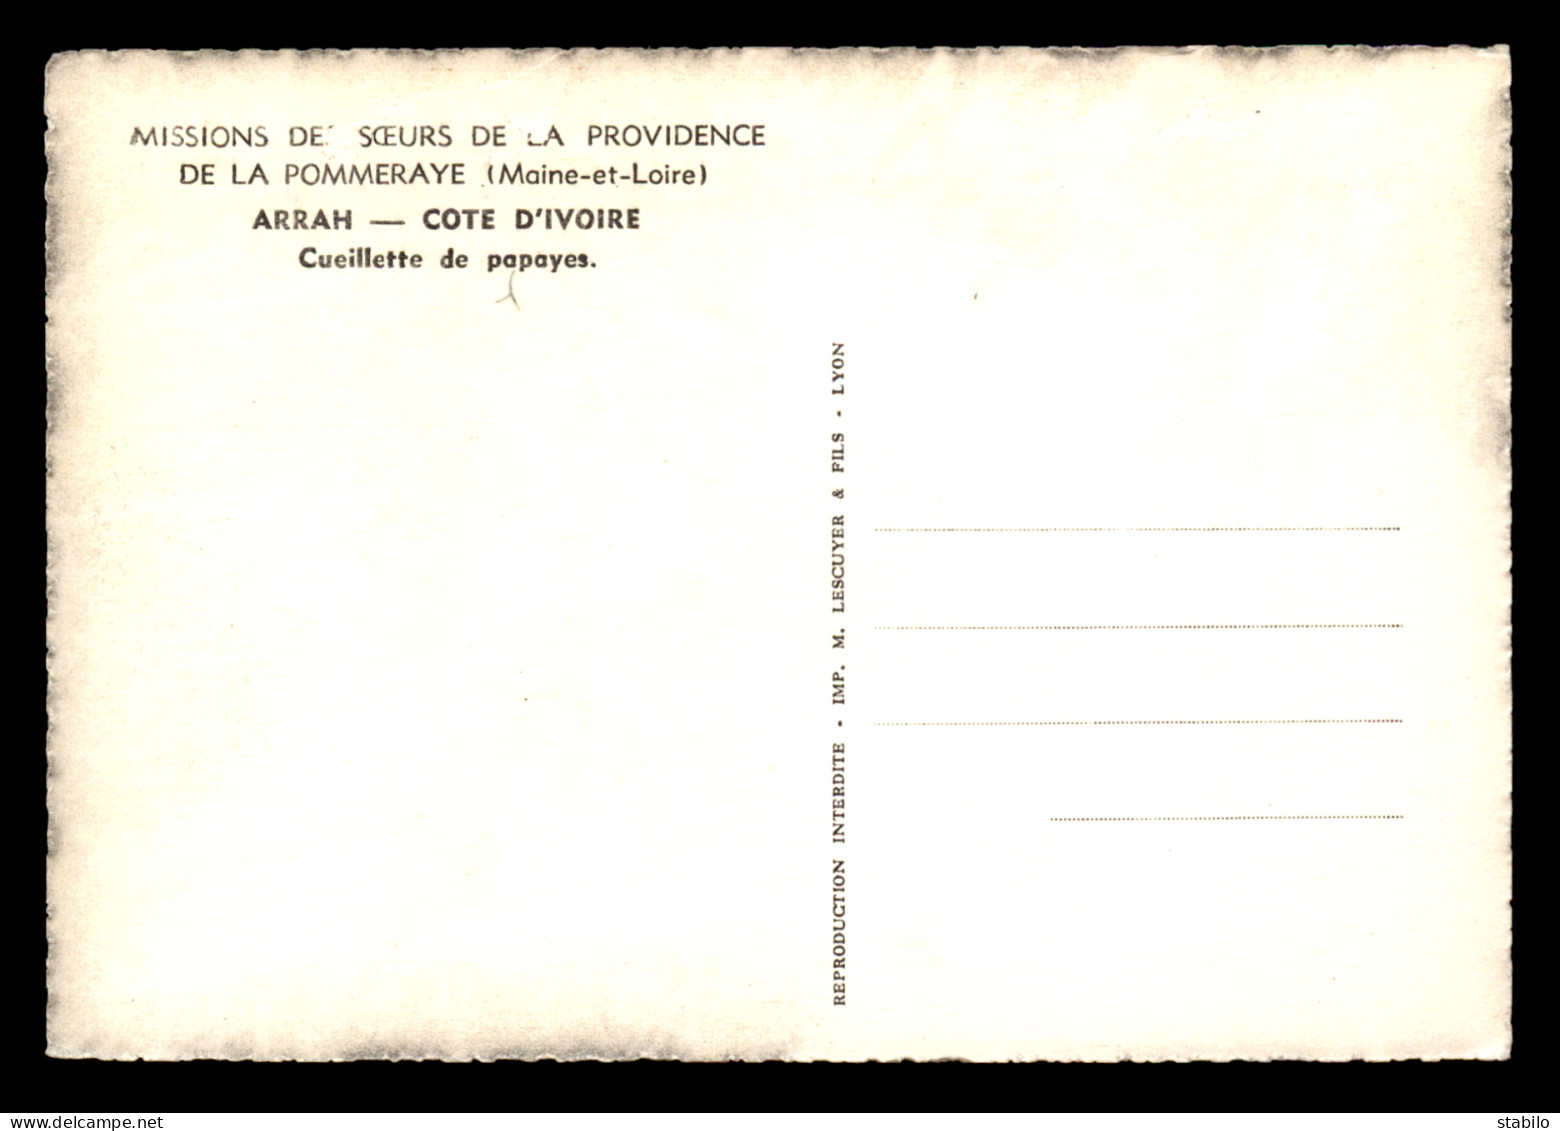 MISSIONS - SOEURS DE LA PROVIDENCE DE LA POMMERAYE (MAINE-ET-LOIRE) - COTE D'IVOIRE - ARRAH - CUEILLETTE DE PAPAYES - Missions